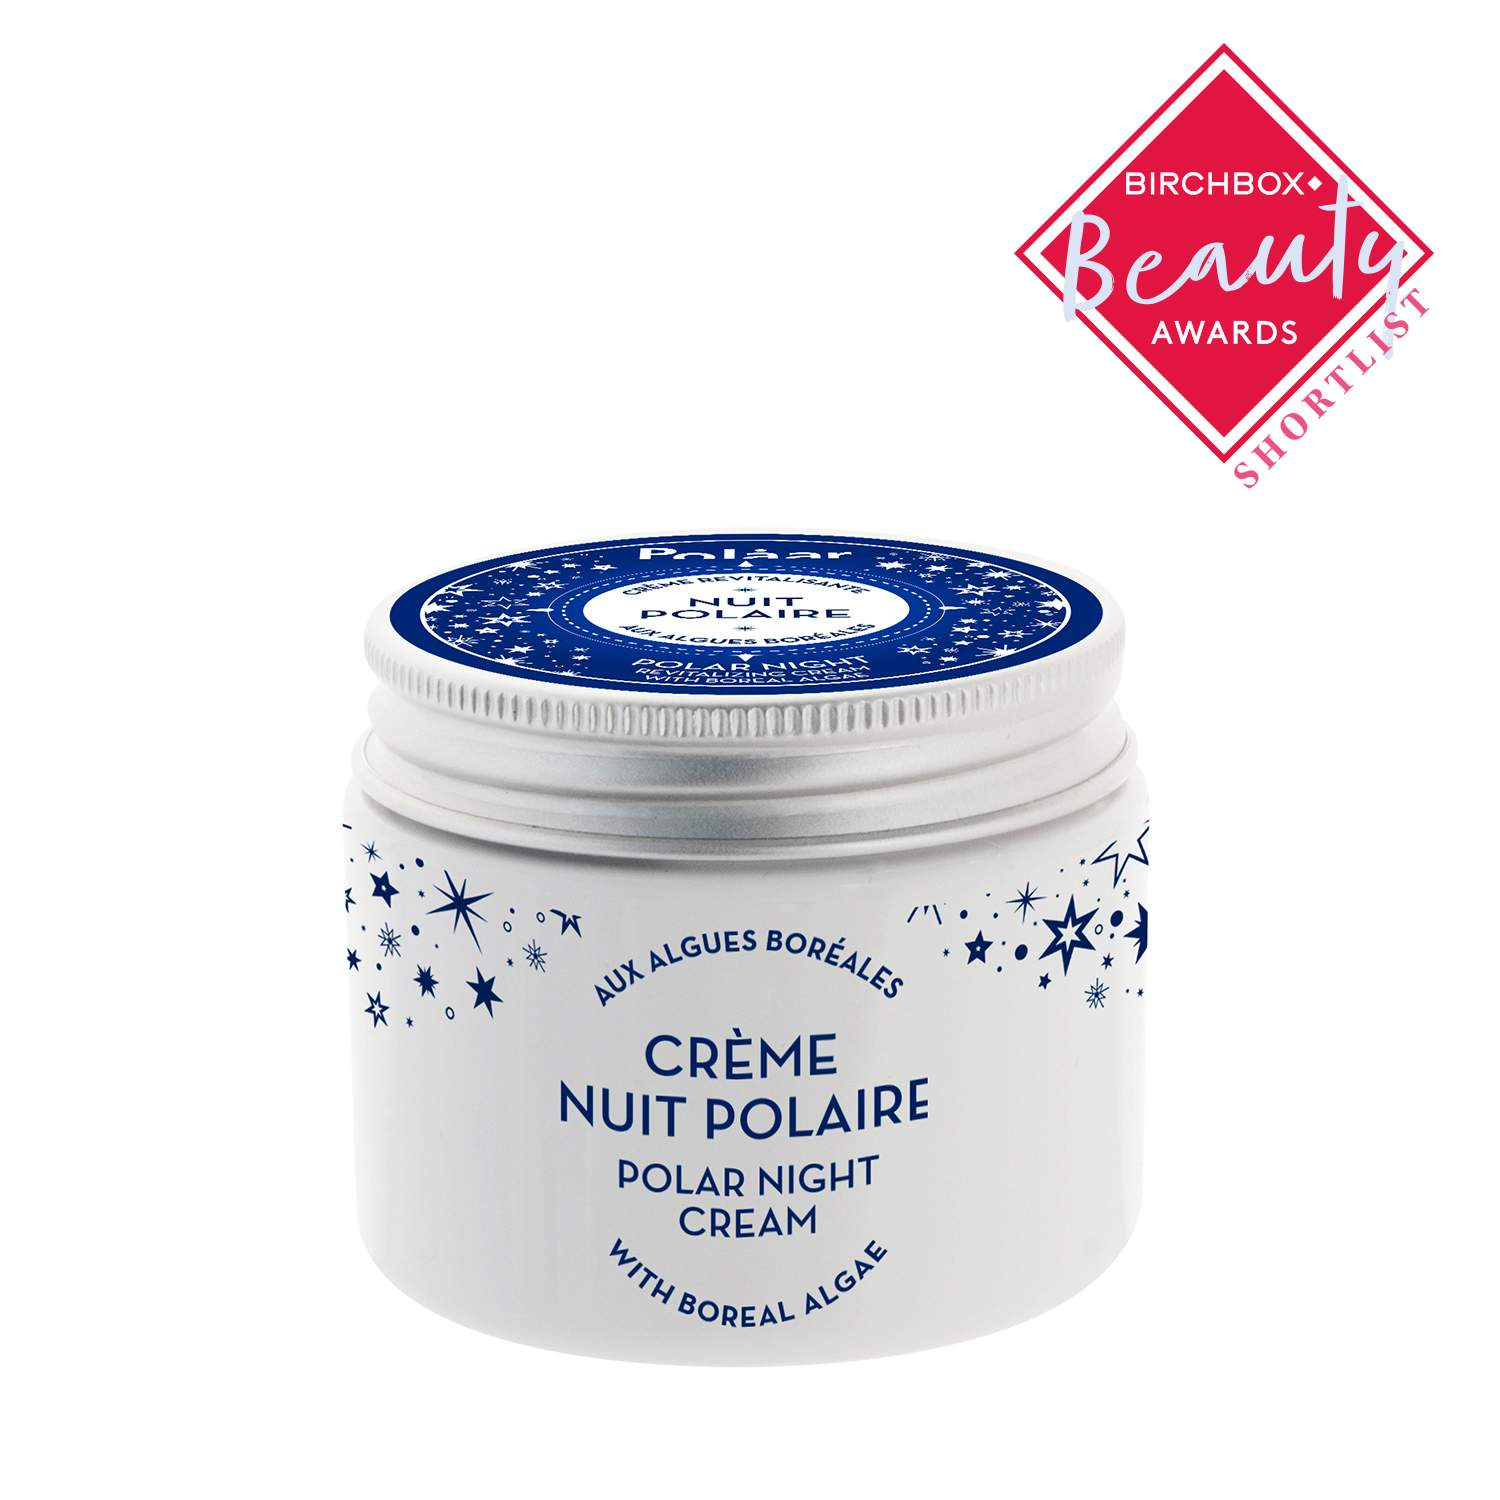 Polaar Polar Night Cream with Boreal Algae  1